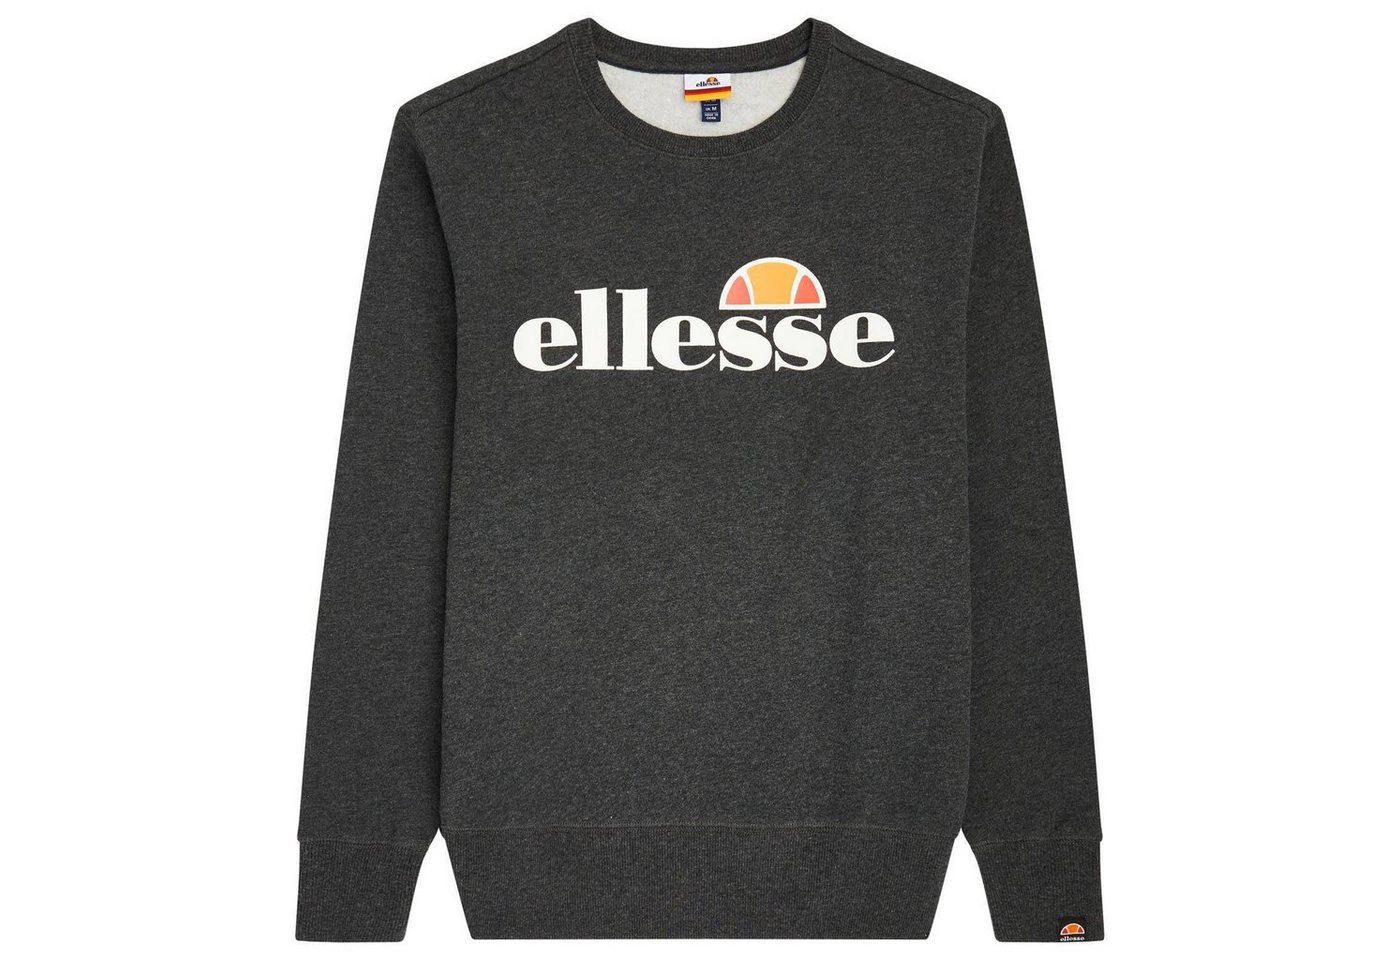 Ellesse Sweatshirt Herren Sweatshirt SUCCISO - Sweater, Rundhals von Ellesse